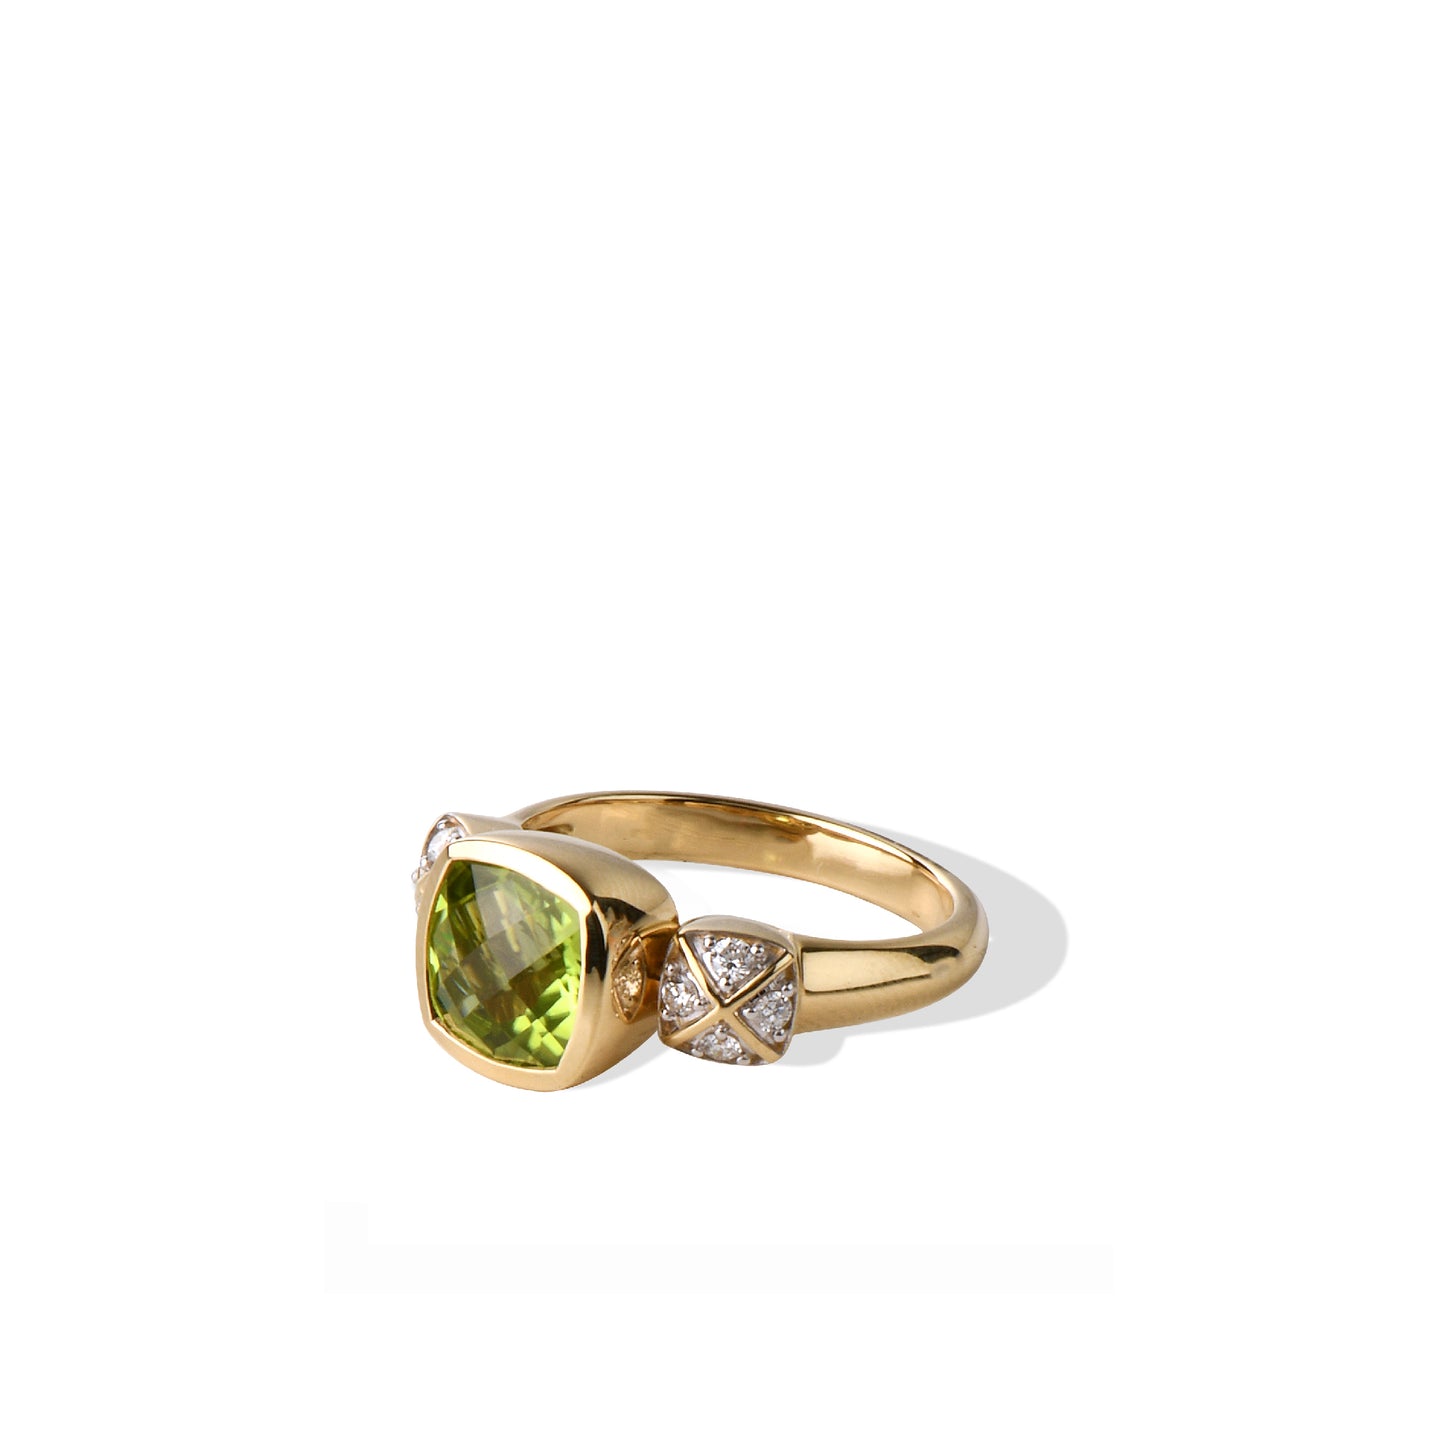 Peridot Ring | Cushion Corner Peridot White Diamond Yellow Gold Princess Ring